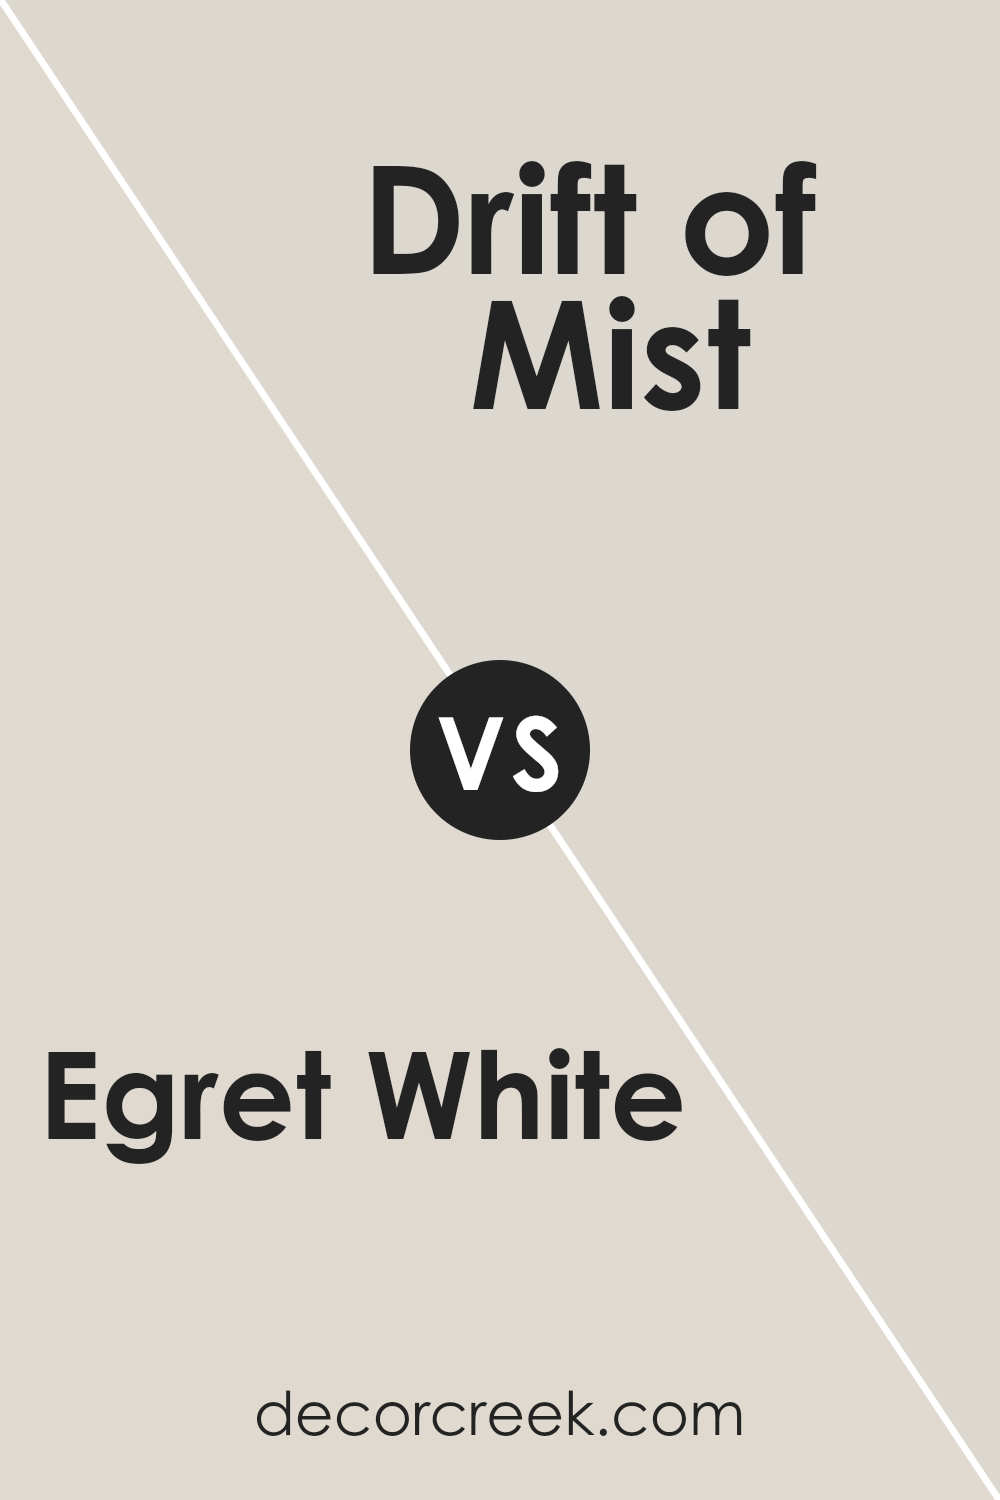 egret_white_sw_7570_vs_drift_of_mist_sw_9166